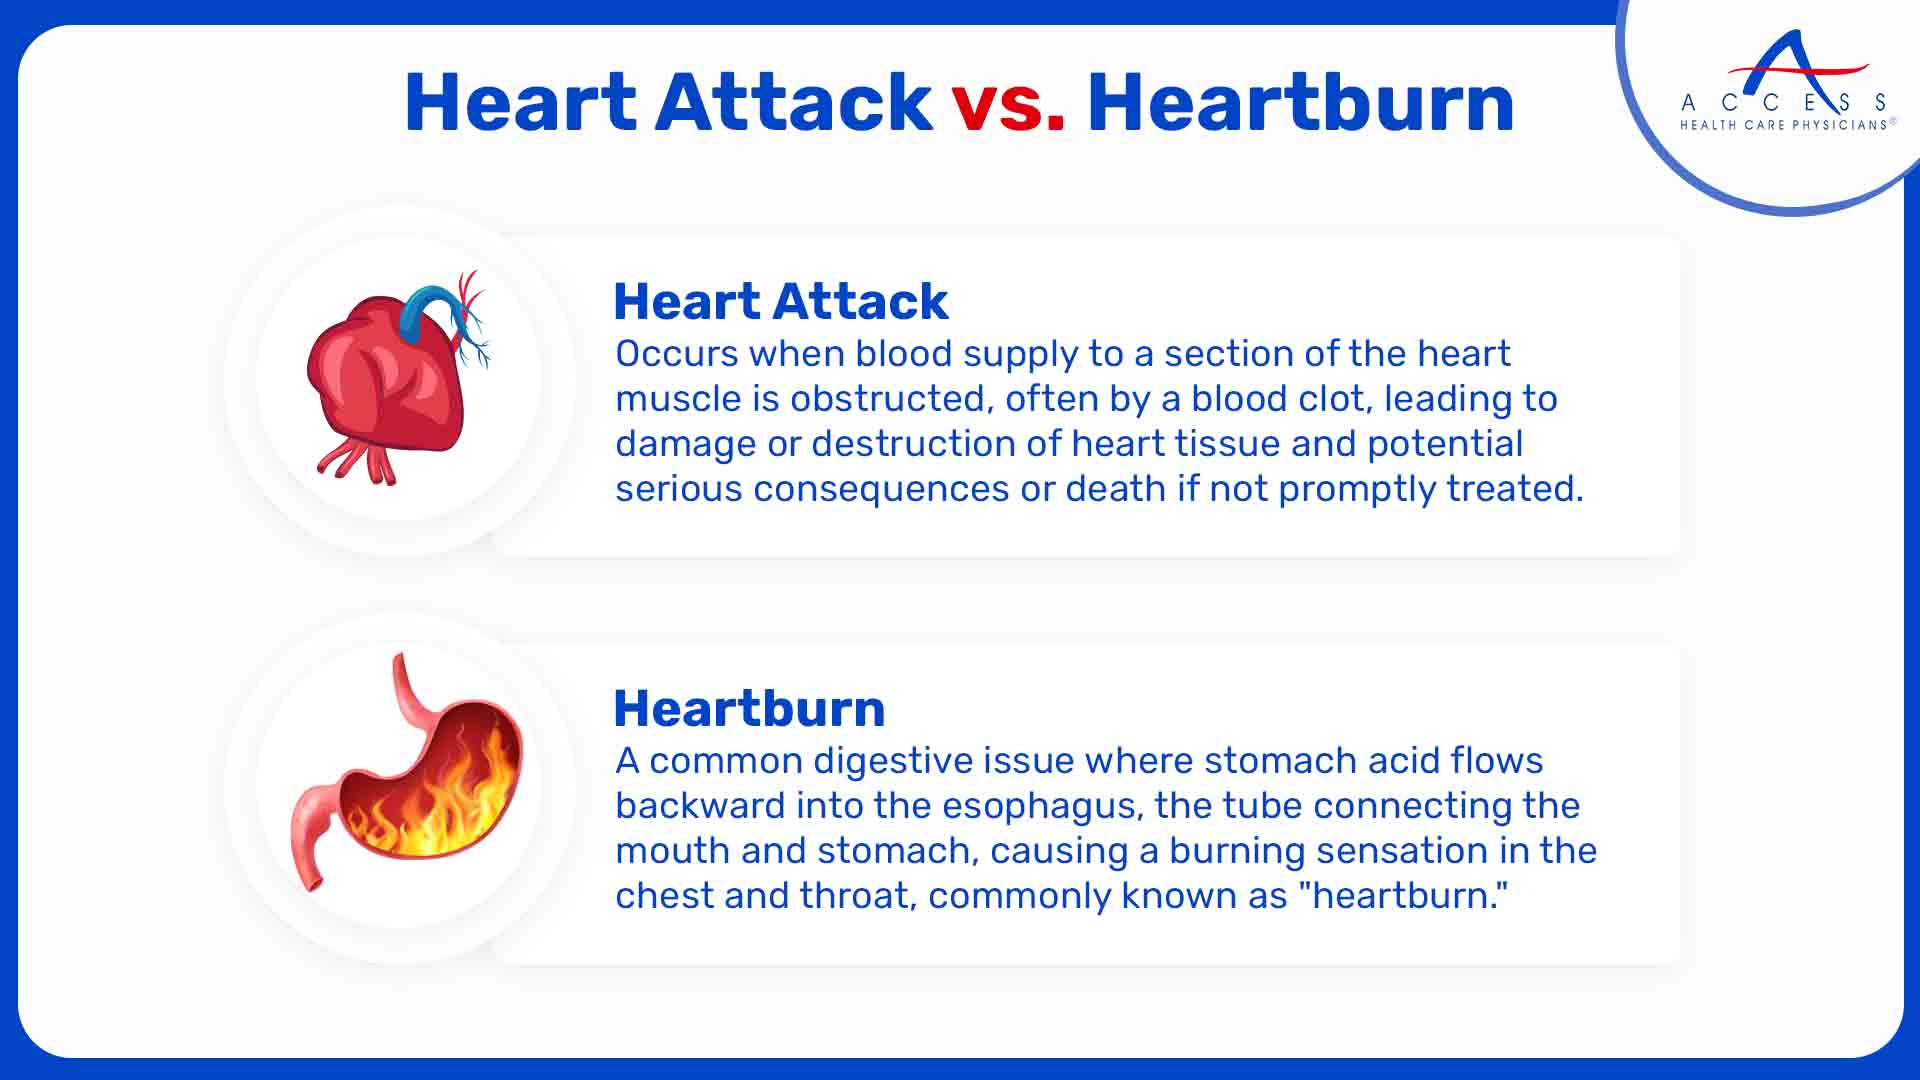 Heart Attack vs. Heartburn